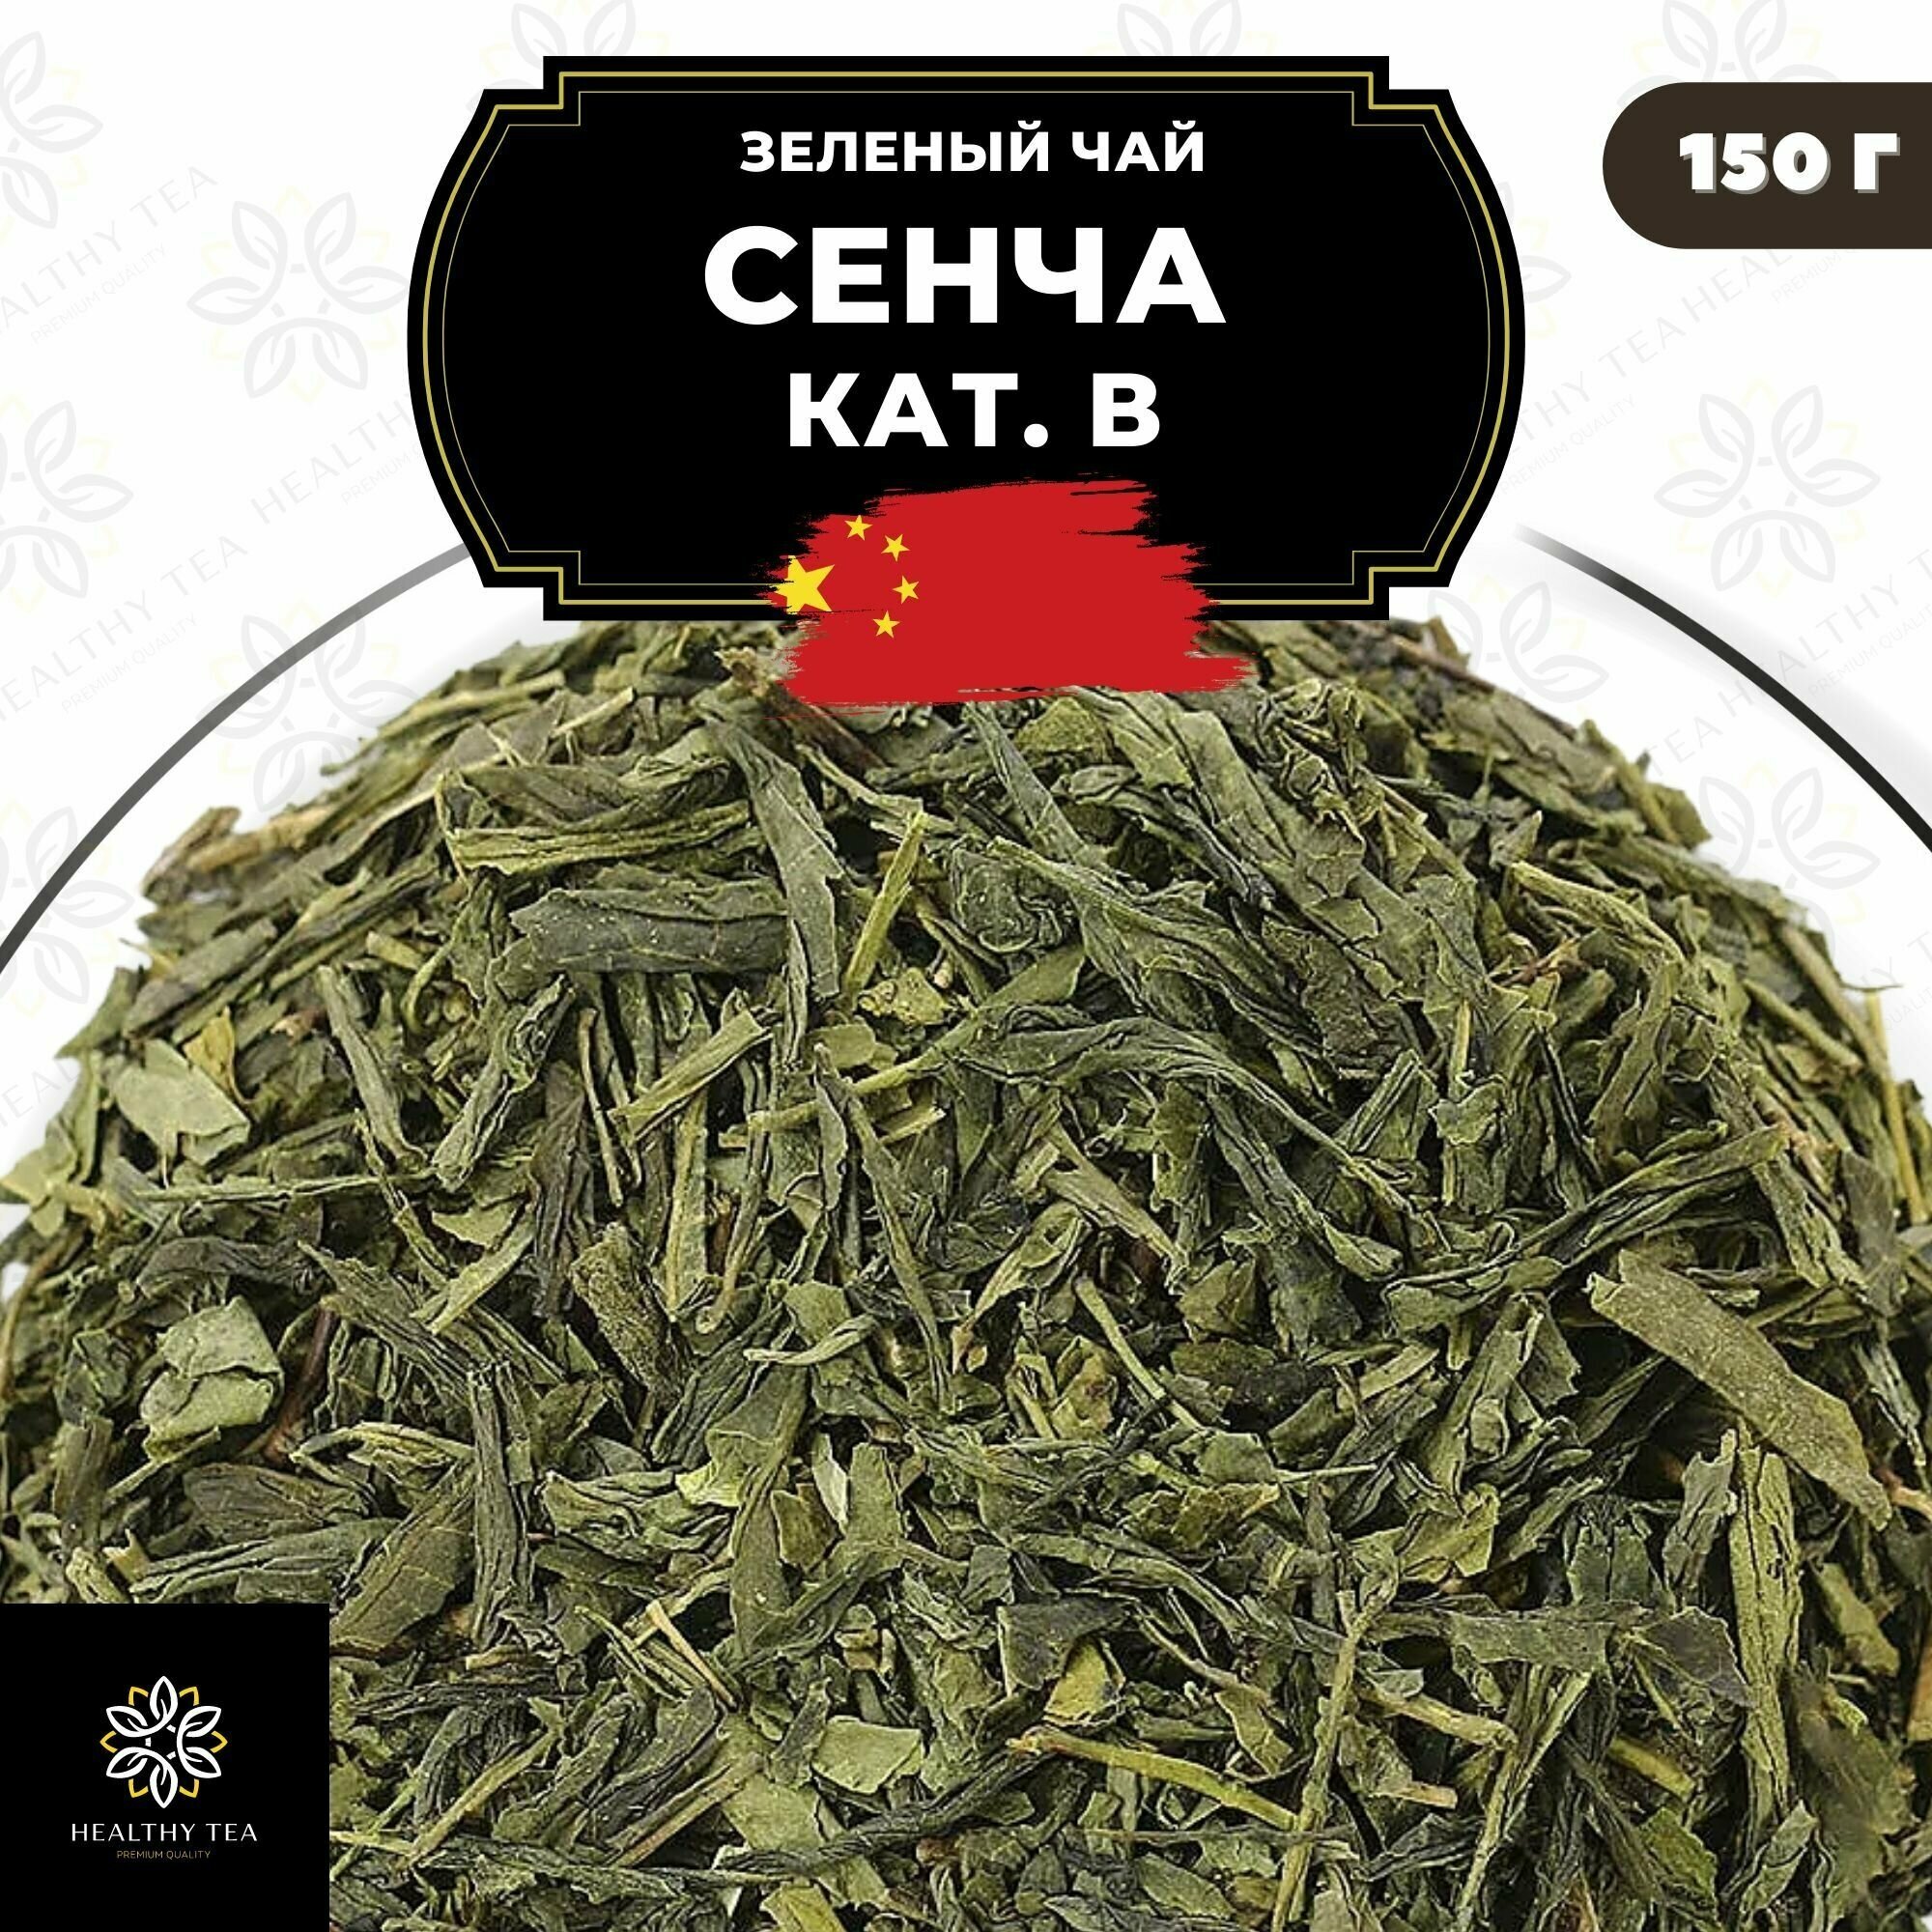 Китайский зеленый чай без добавок Сенча (кат. B) Полезный чай / HEALTHY TEA, 150 г